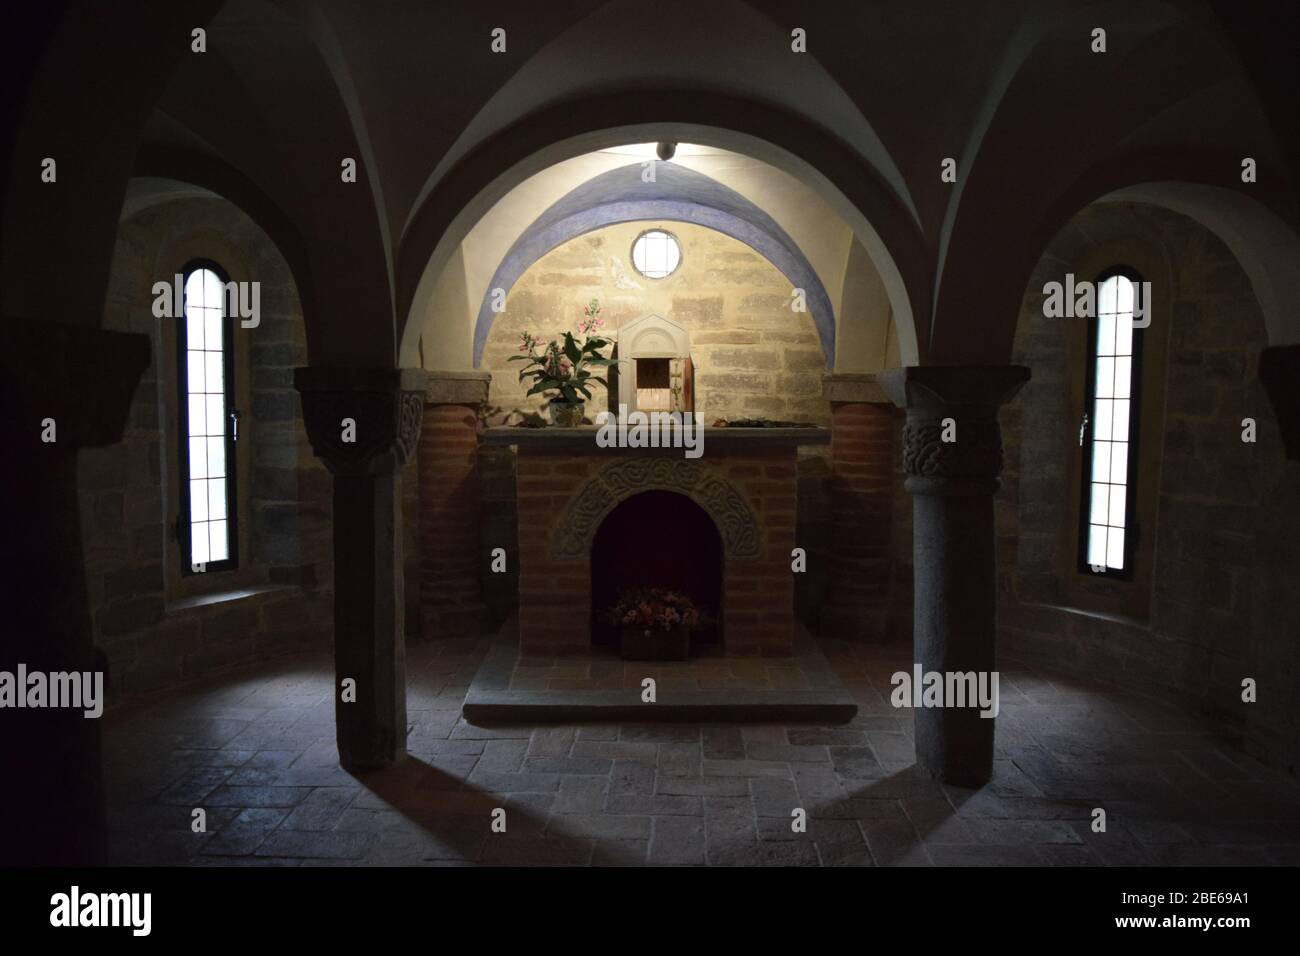 Pieve (ländliche Pfarrkirche) von San Donato in Polenta. Bertinoro, Italien. Romanische Krypta Interieur. Zentraler Standpunkt. Stockfoto